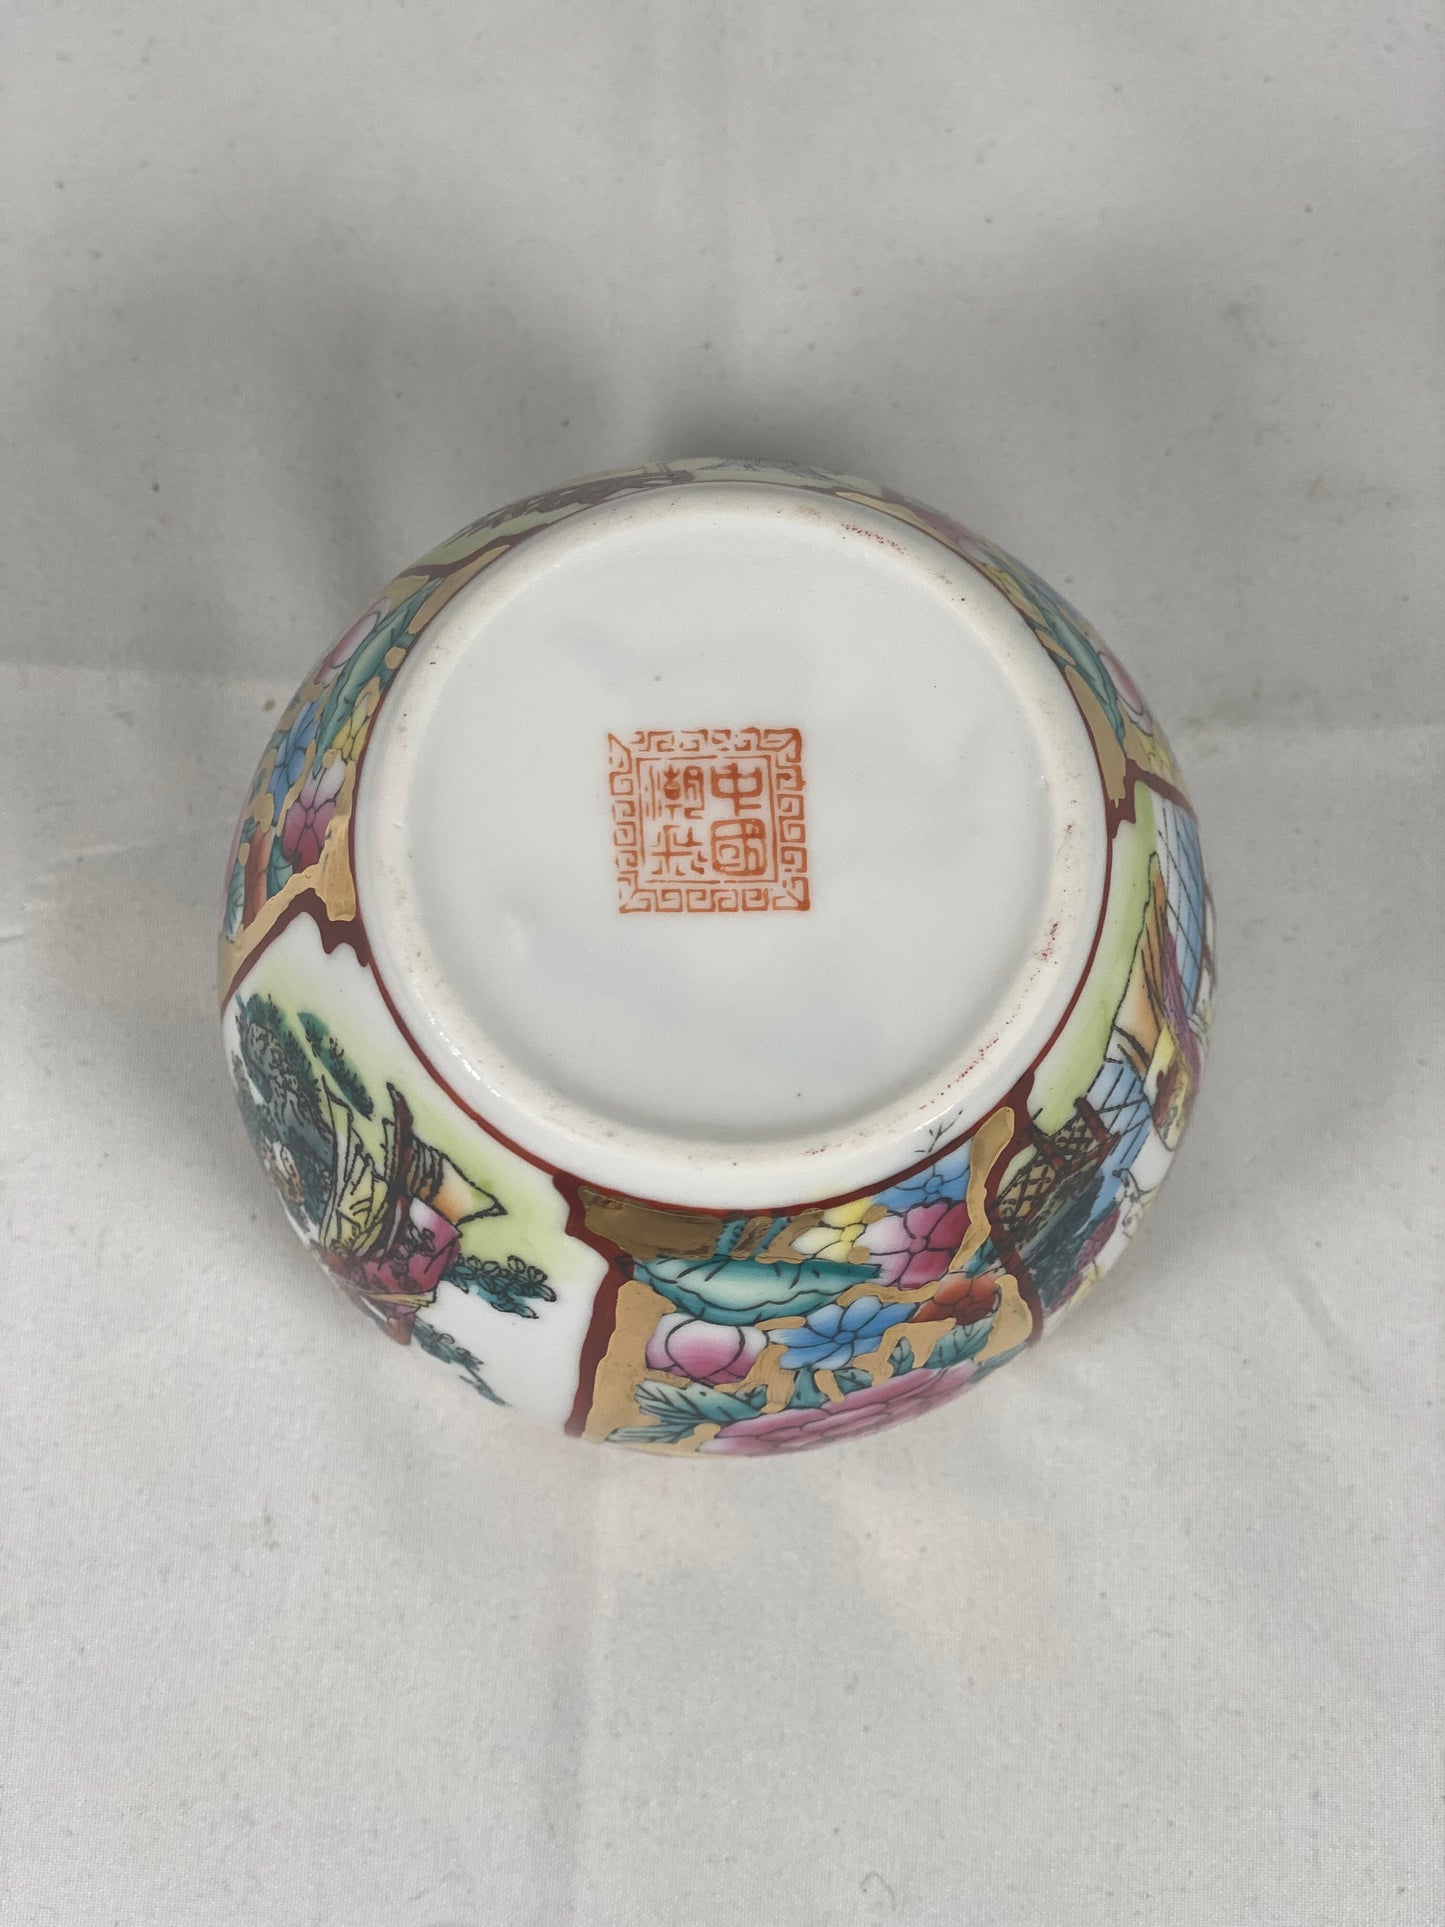 复古中国纪念品手绘蛋壳瓷鱼缸